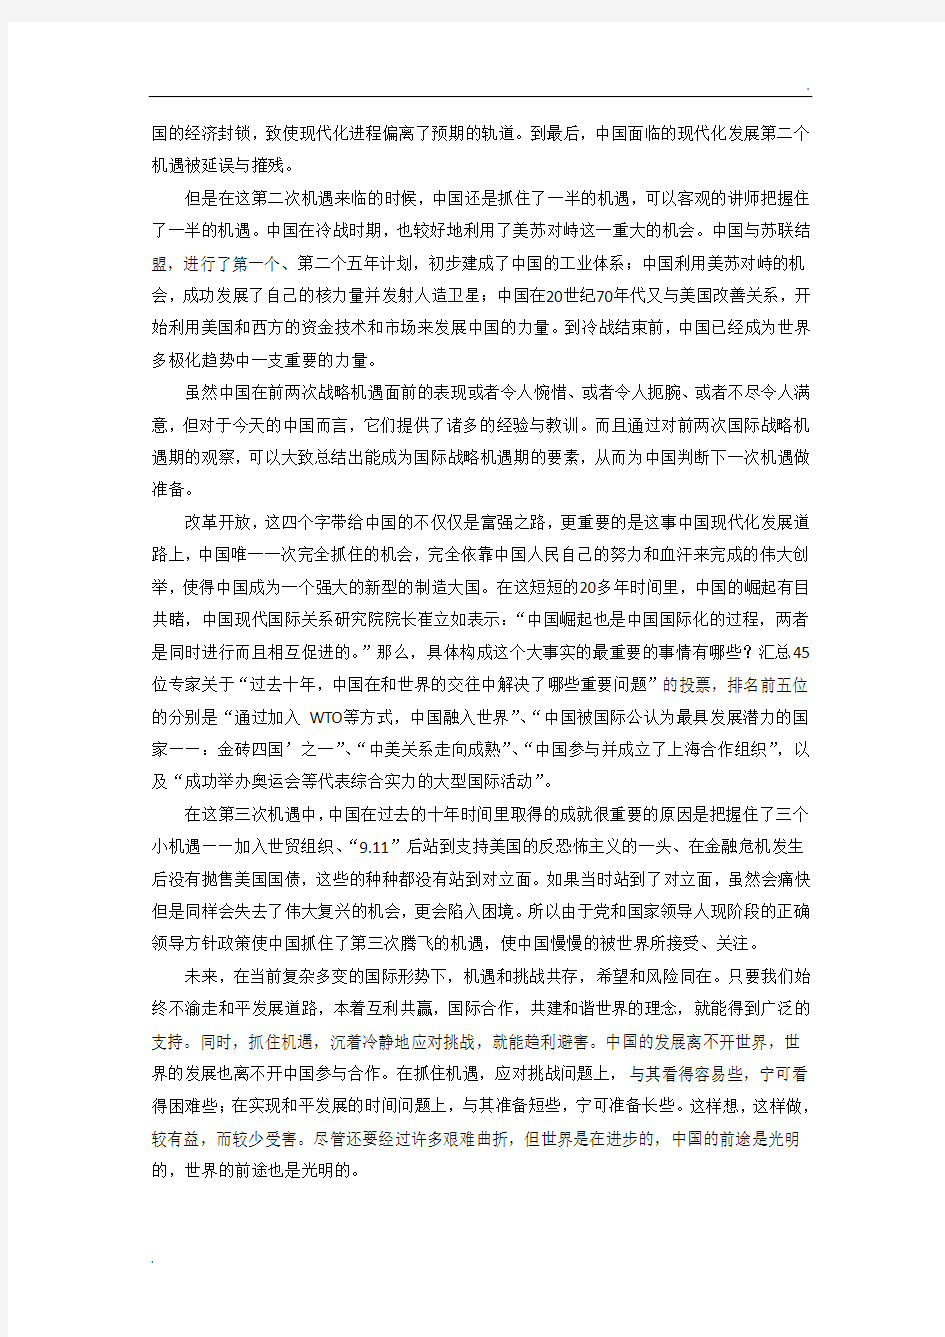 中国现代化进程论文